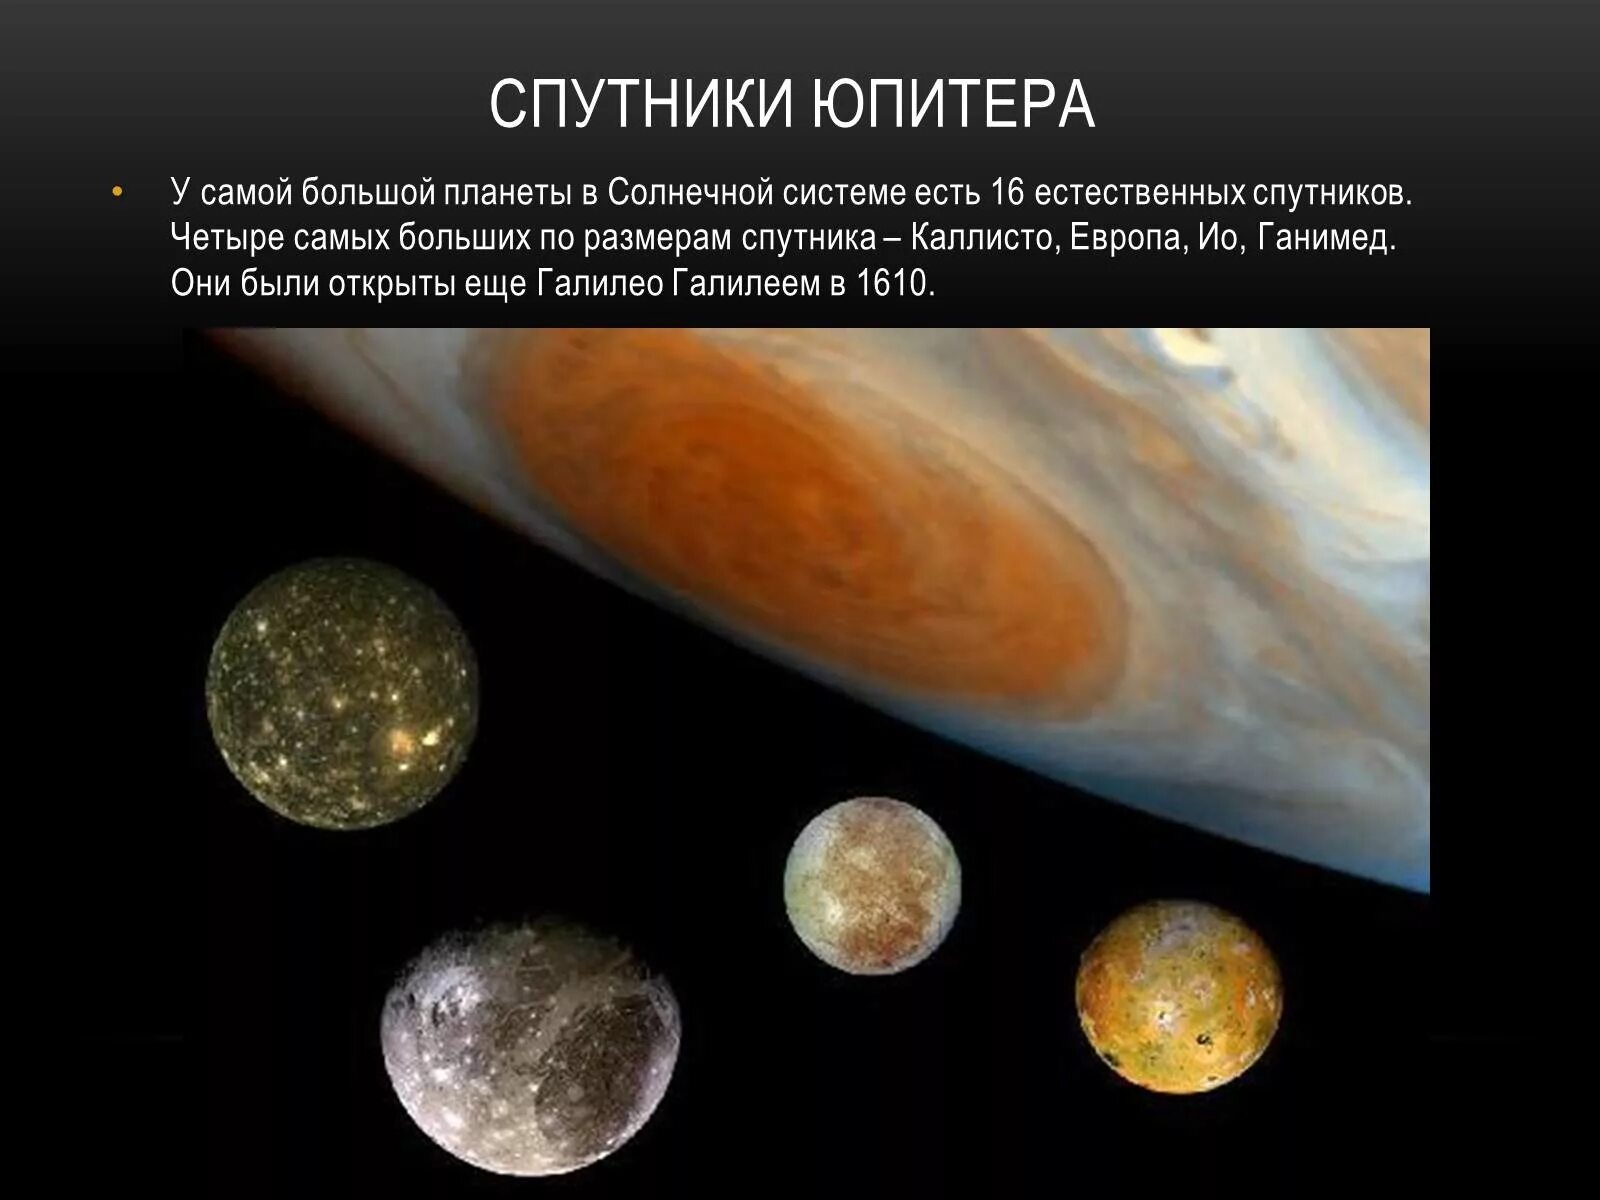 Галилеевы спутники Юпитера. Юпитер Планета спутники галилеевы. Галилеевы спутники Юпитера Ганимед. Спутники Юпитера Европа, Каллисто и Ганимед.